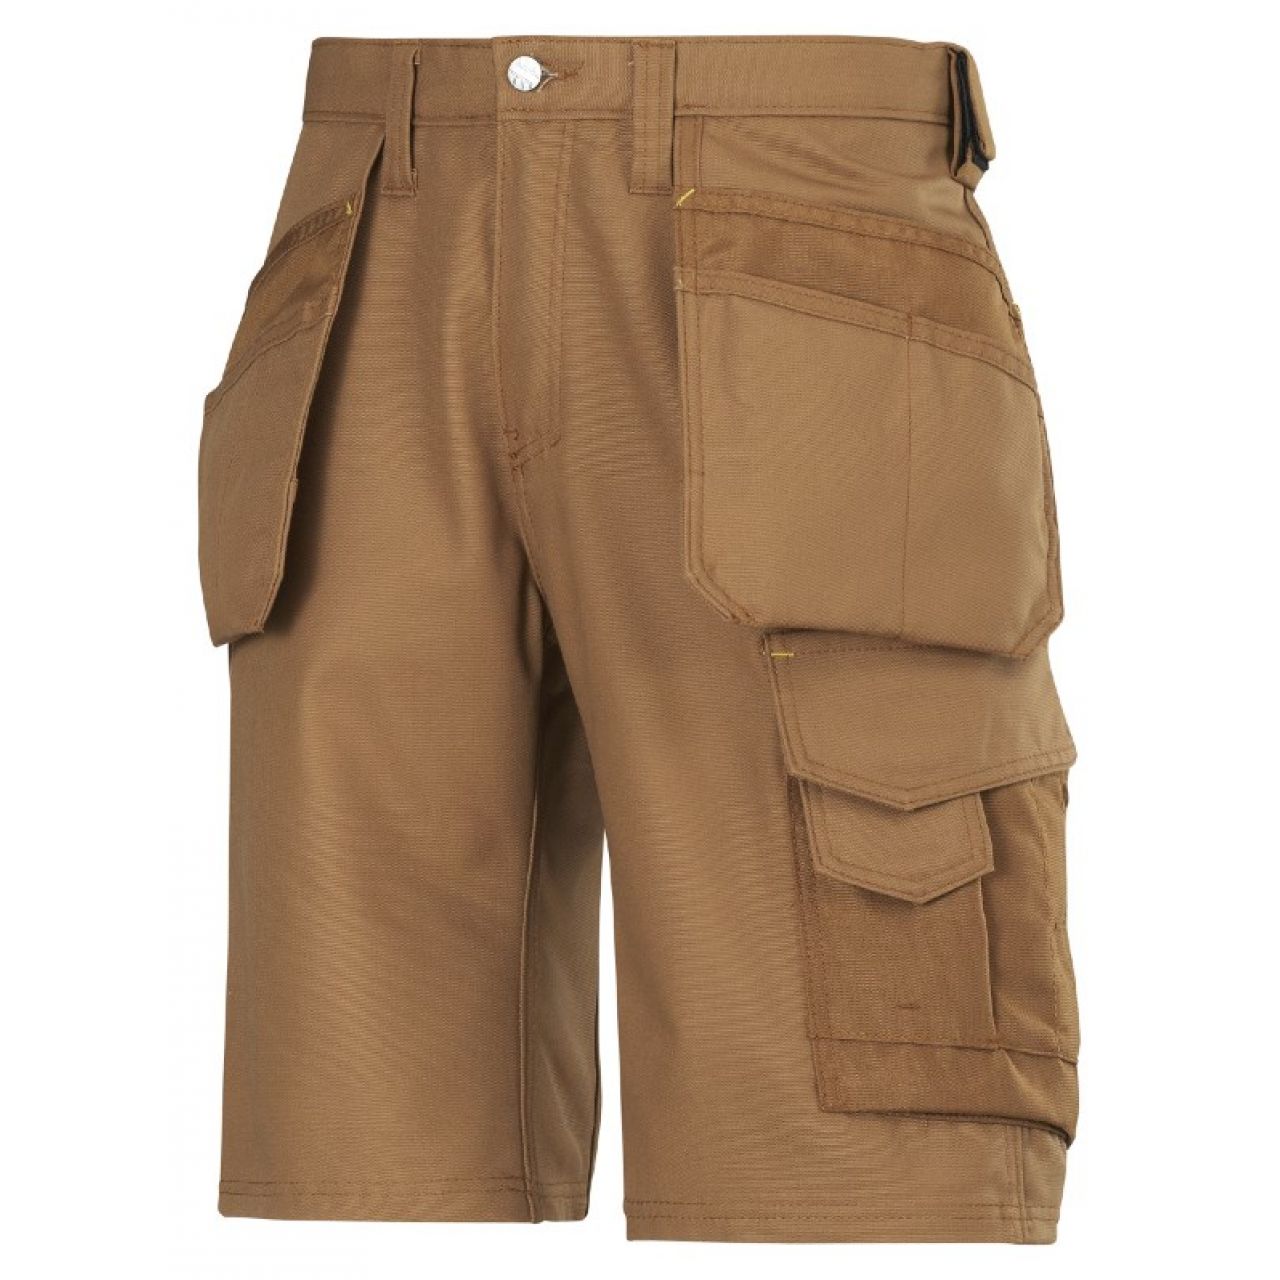 3014 Pantalones cortos de trabajo con bolsillos flotantes Canvas+ marron talla 40